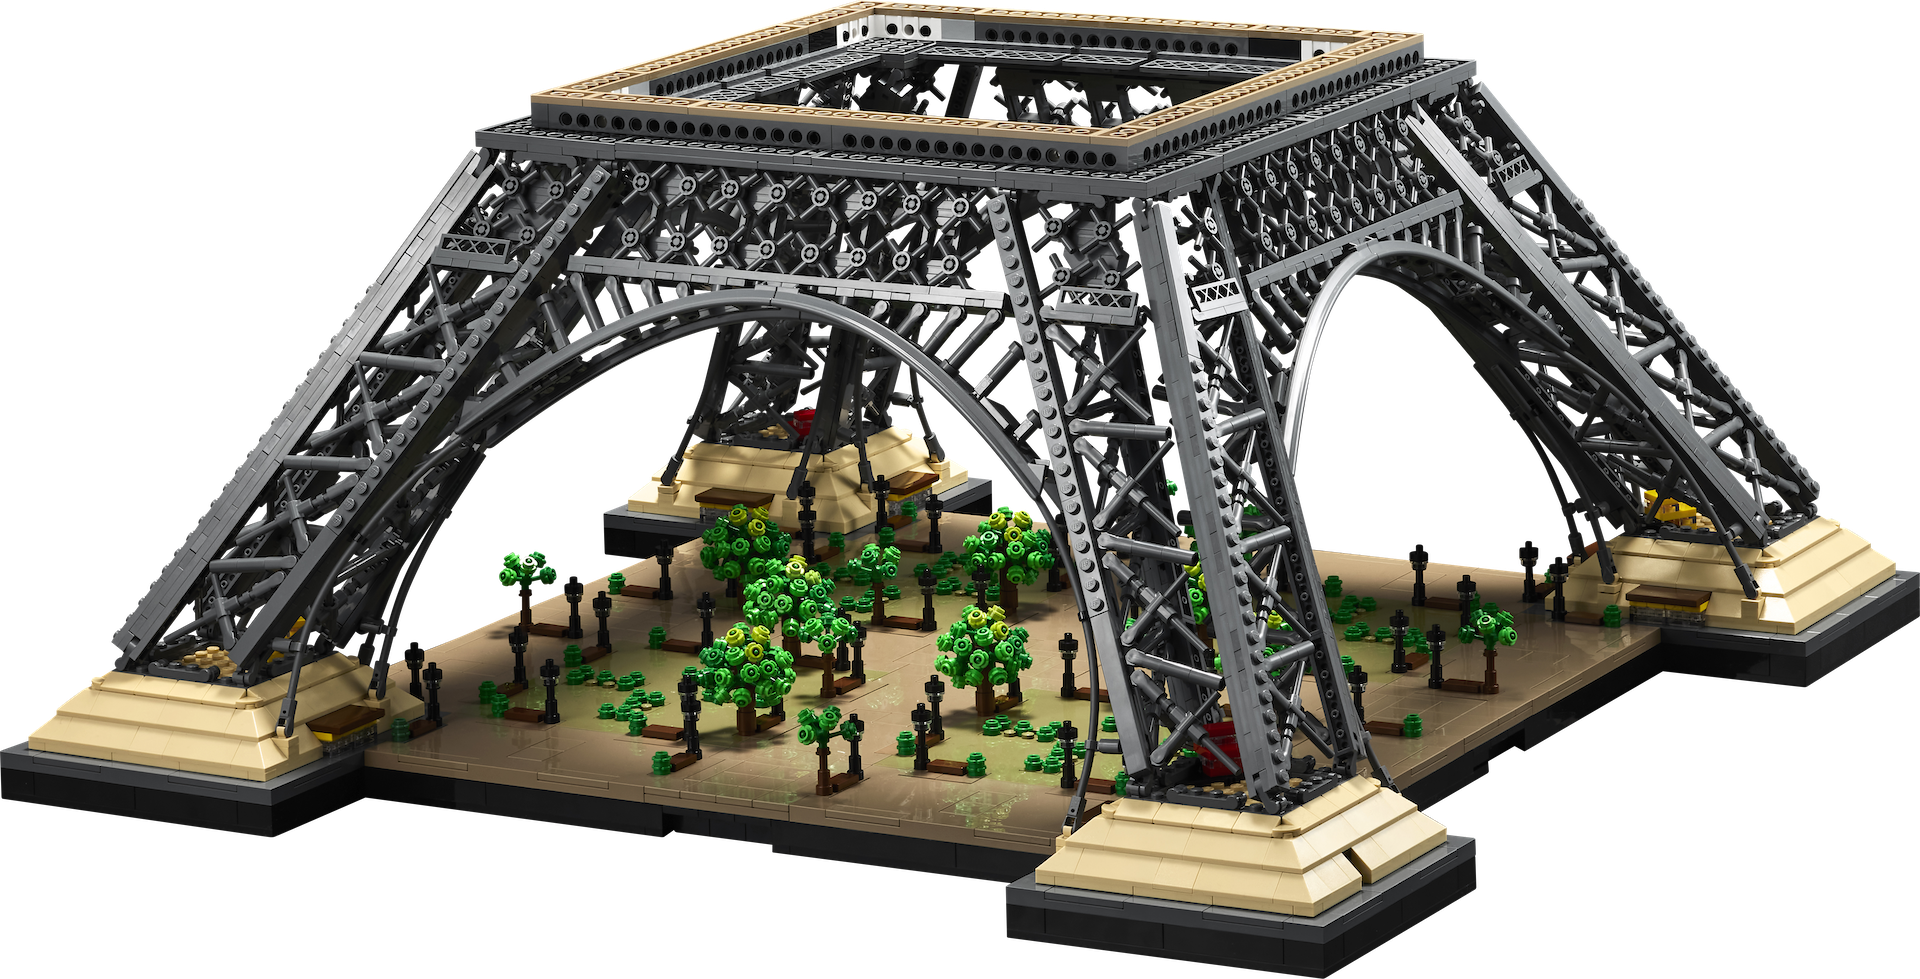 LEGO 10307 La Tour Eiffel s'inspire de plusieurs époques